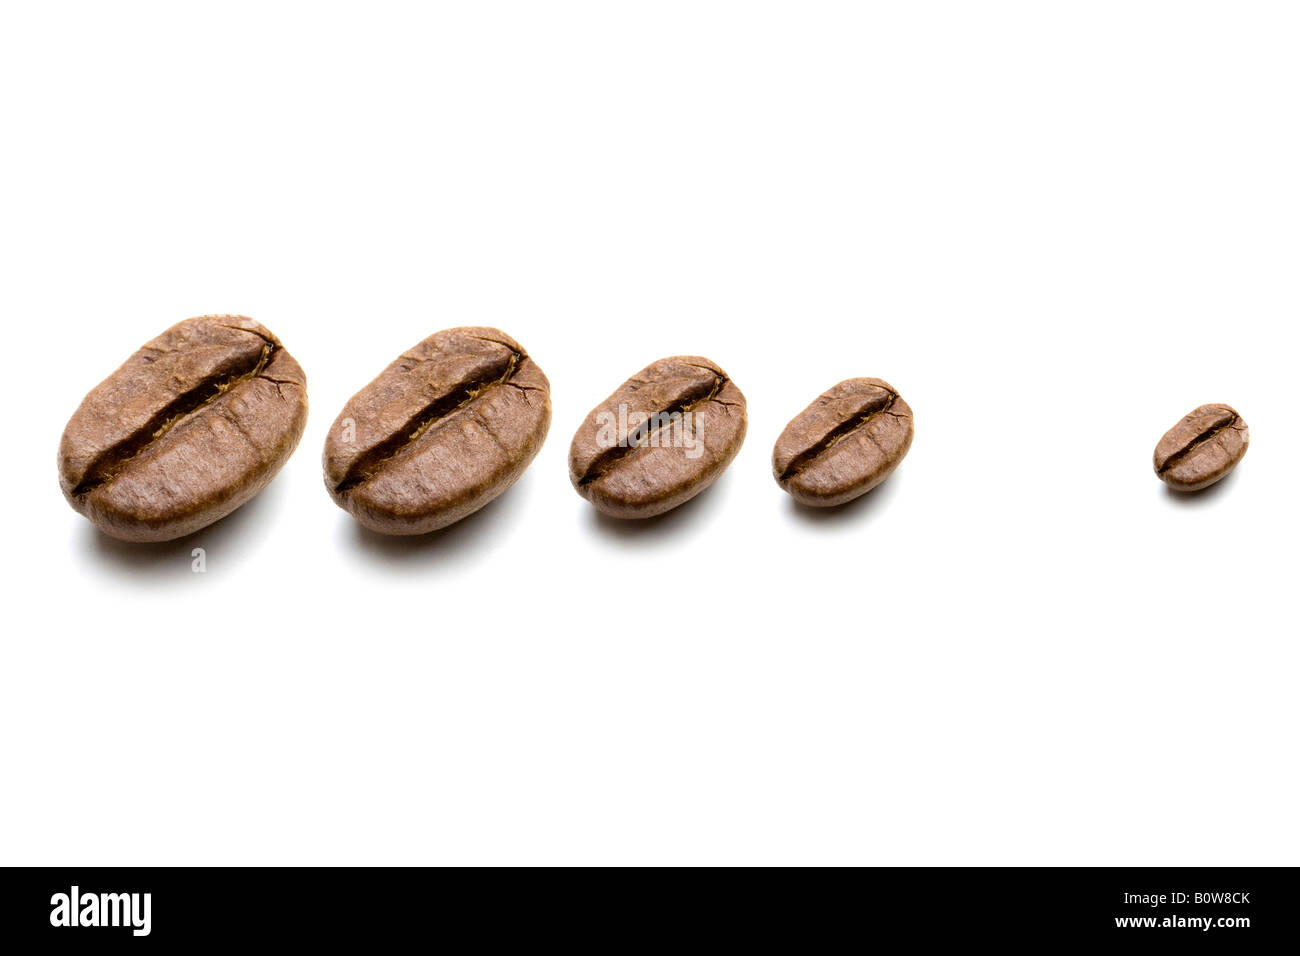 Coffee beans, various sizes Stock Photo